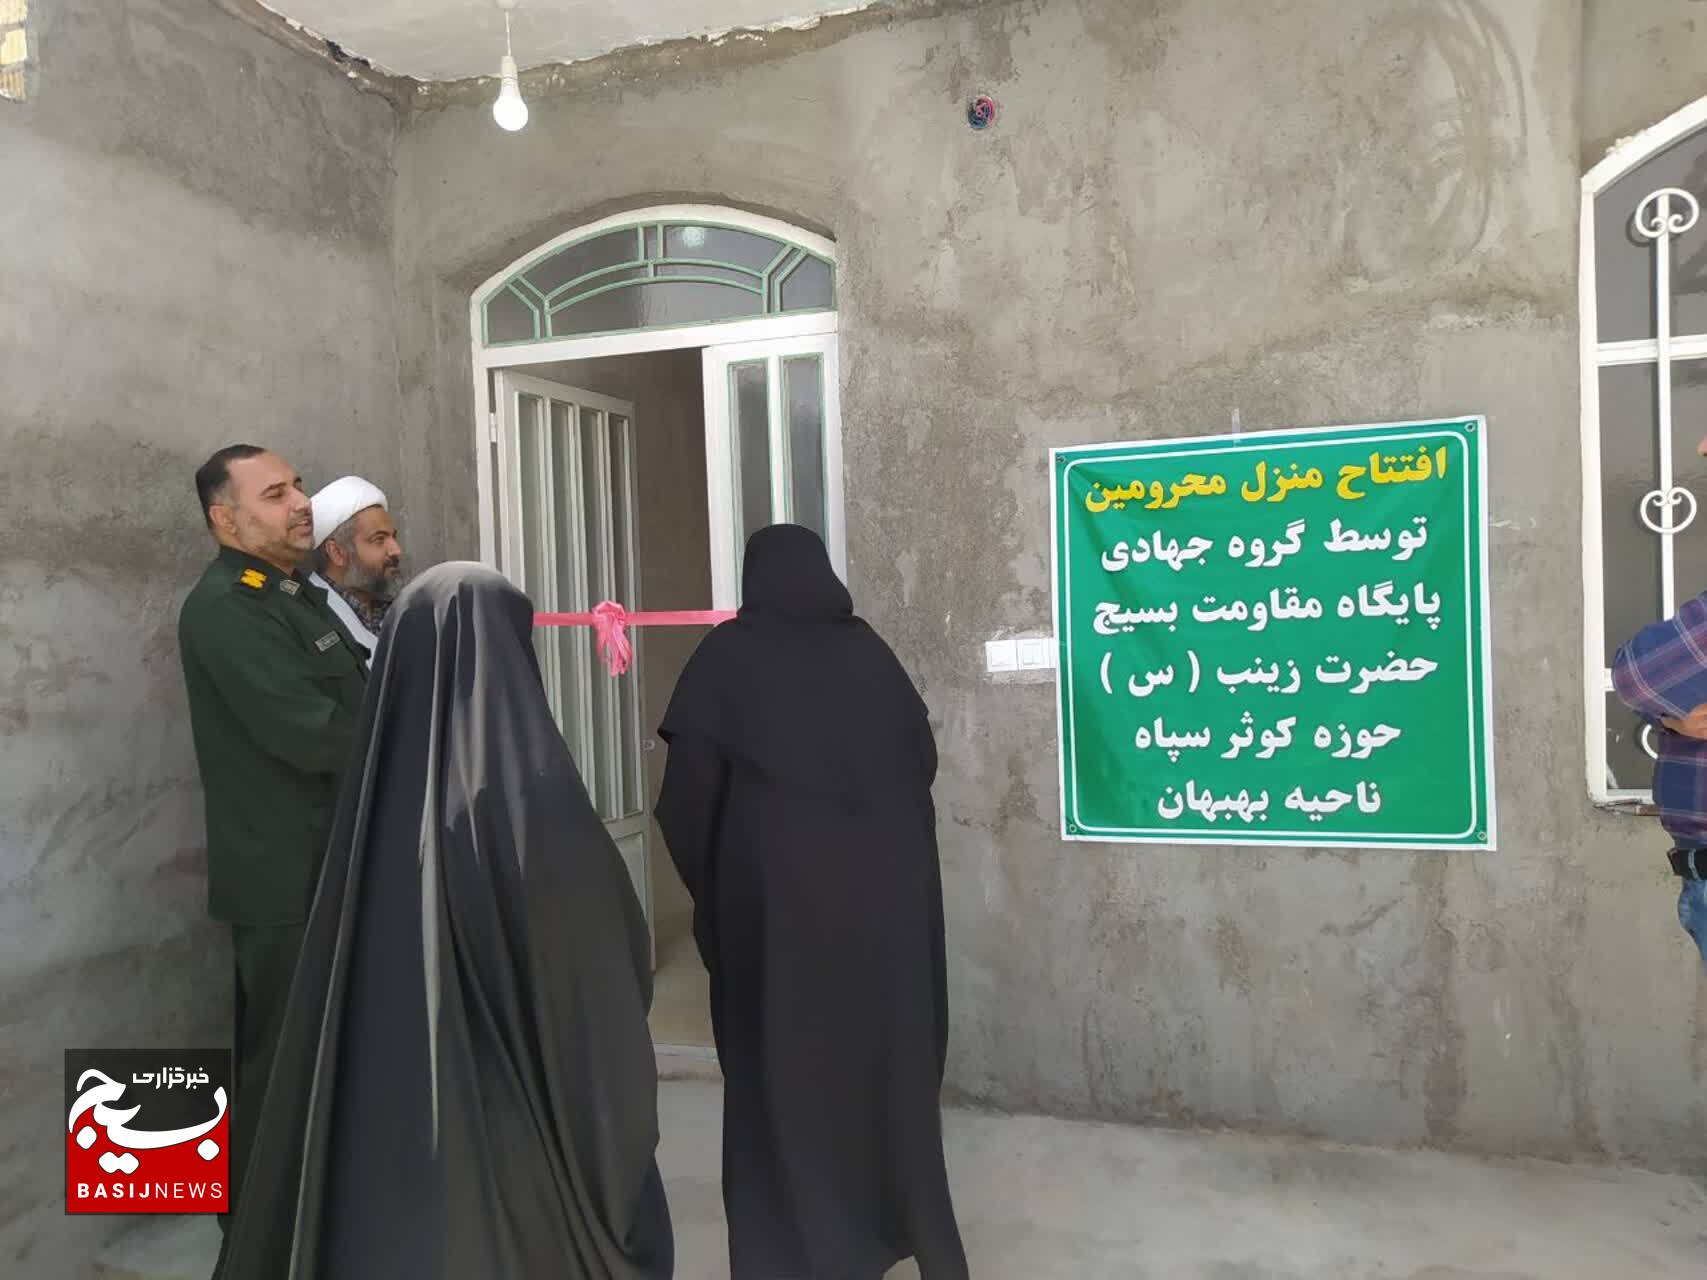 افتتاح خانه محروم به همت بانوان جهادگر در بهبهان